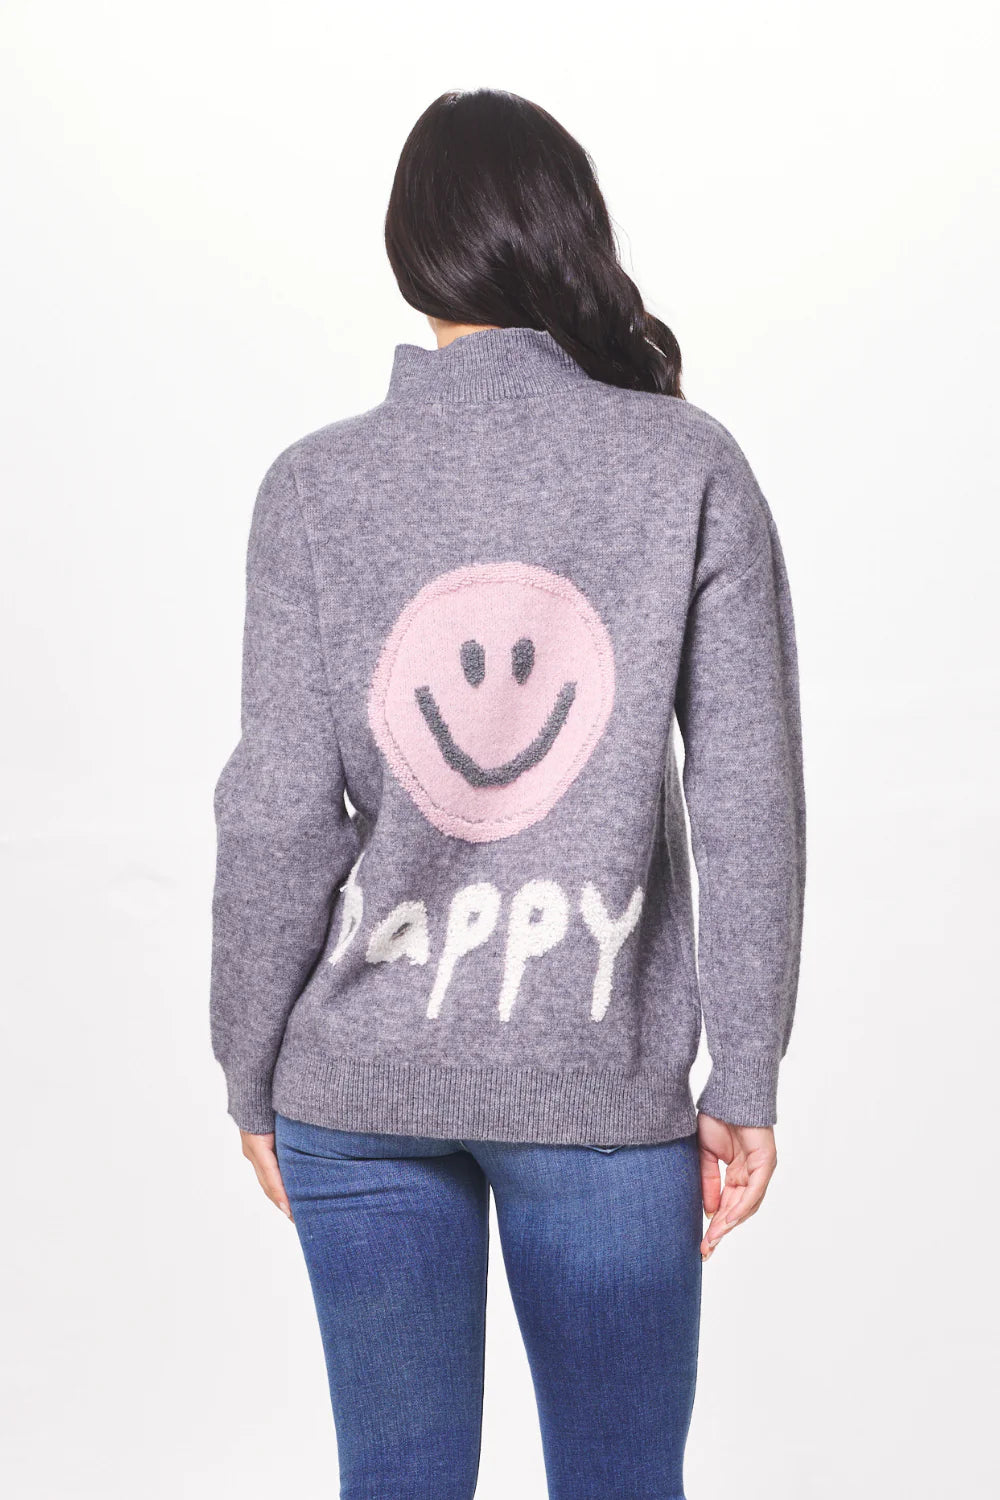 Happy Sweater